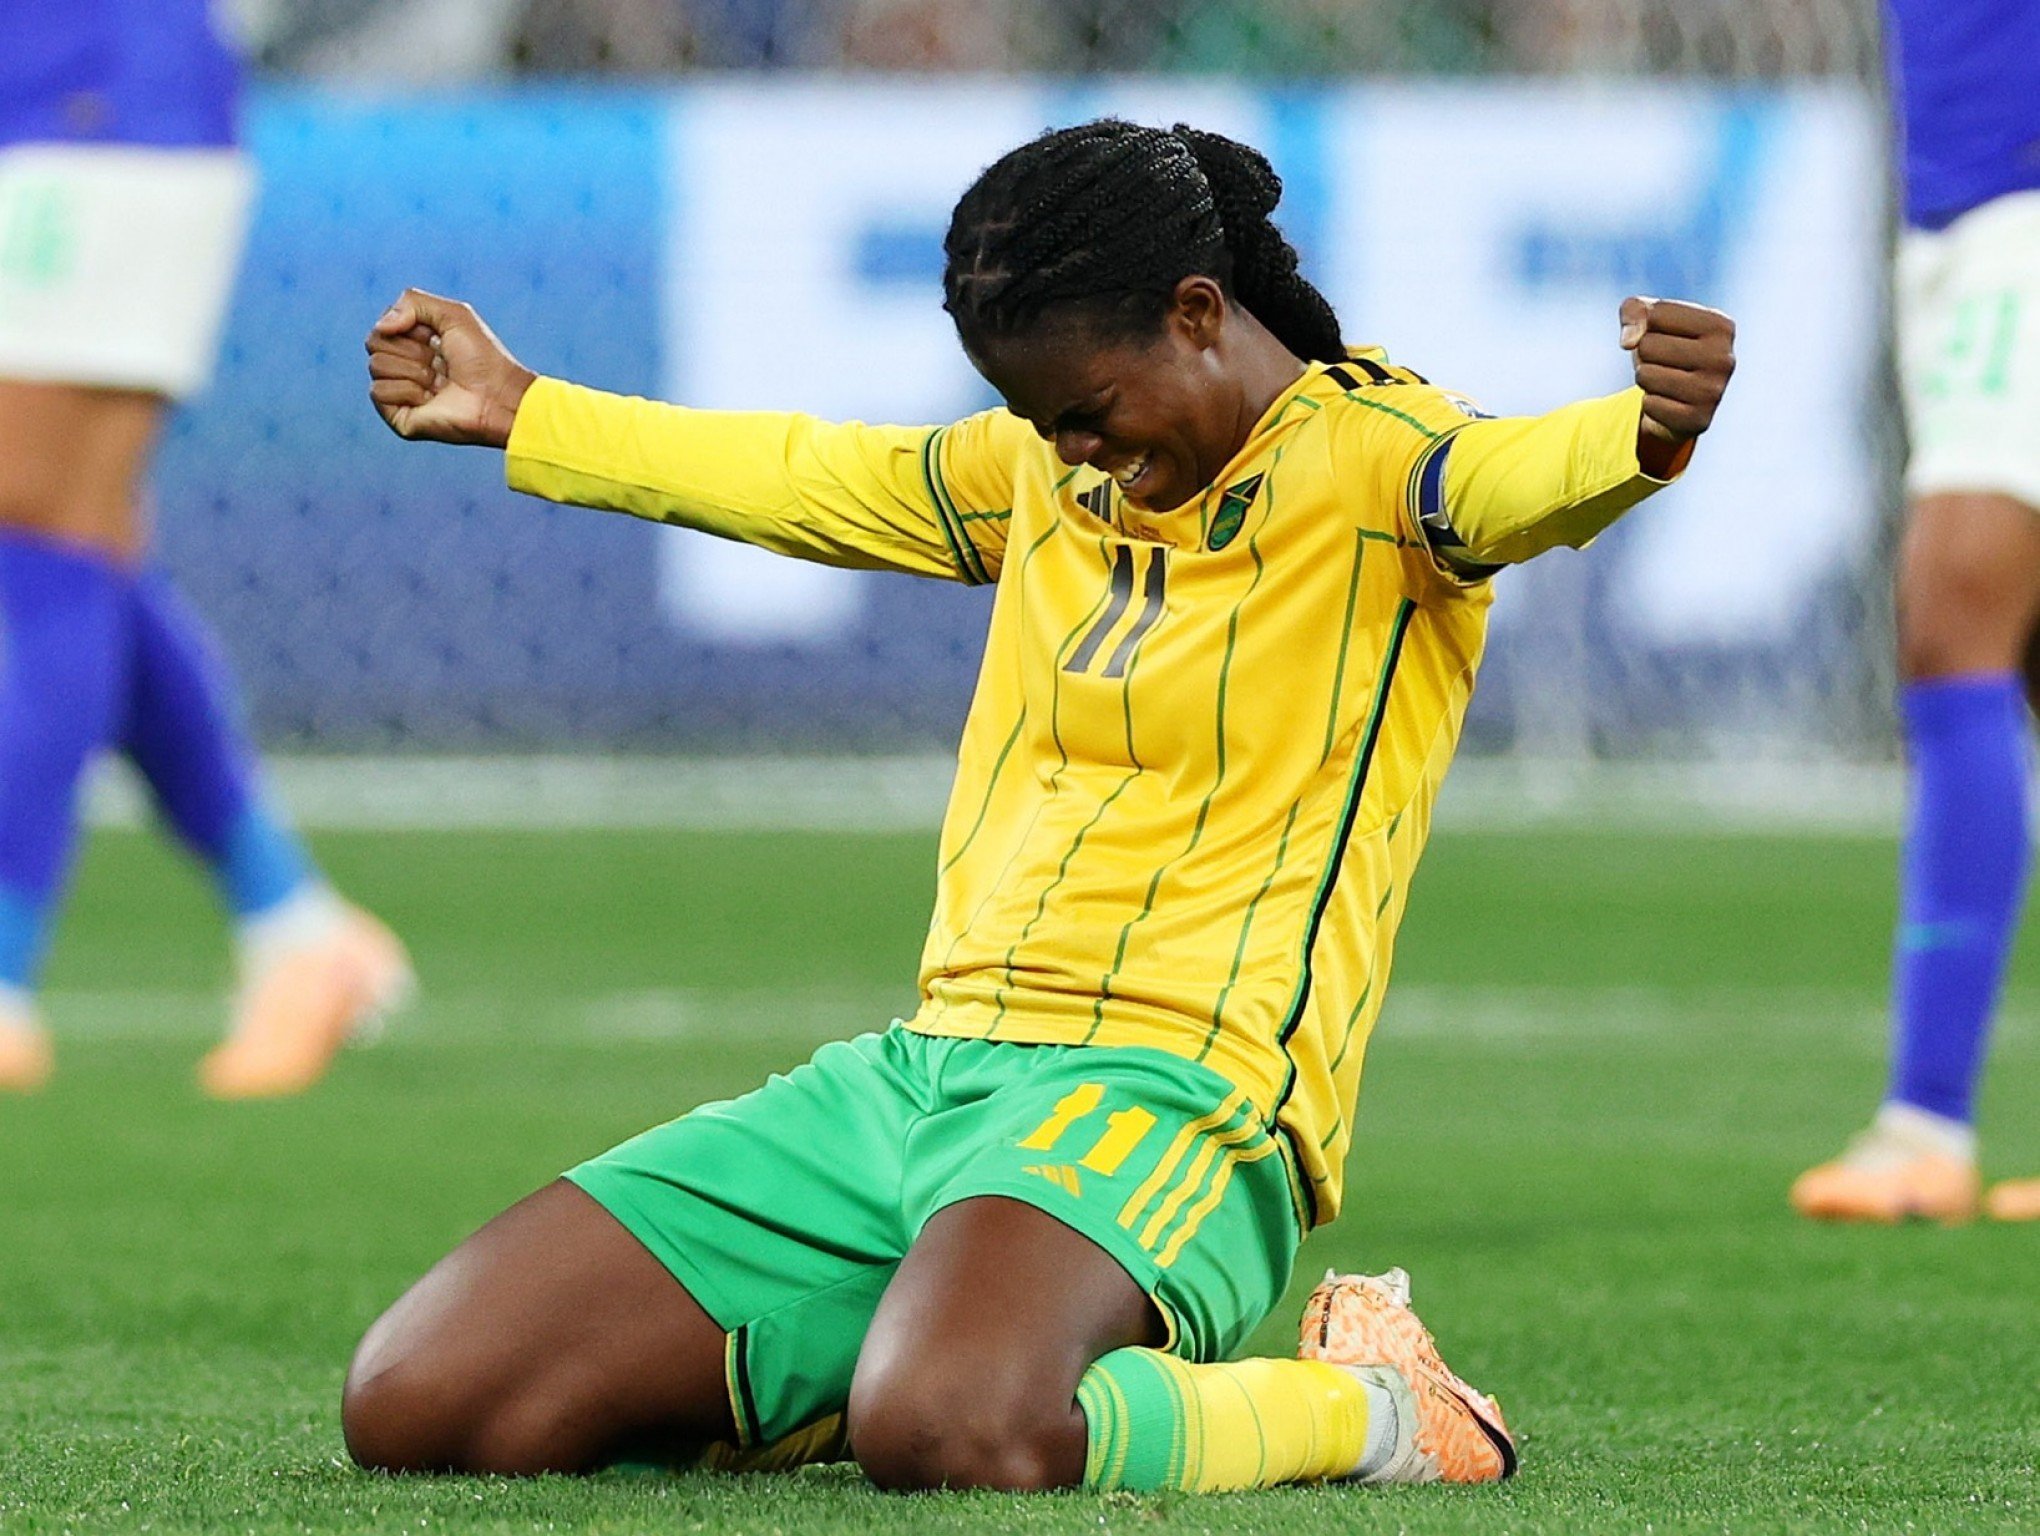 Em jogo de seis gols, Brasil e Holanda empatam no futebol feminino, jogo  futebol feminino 